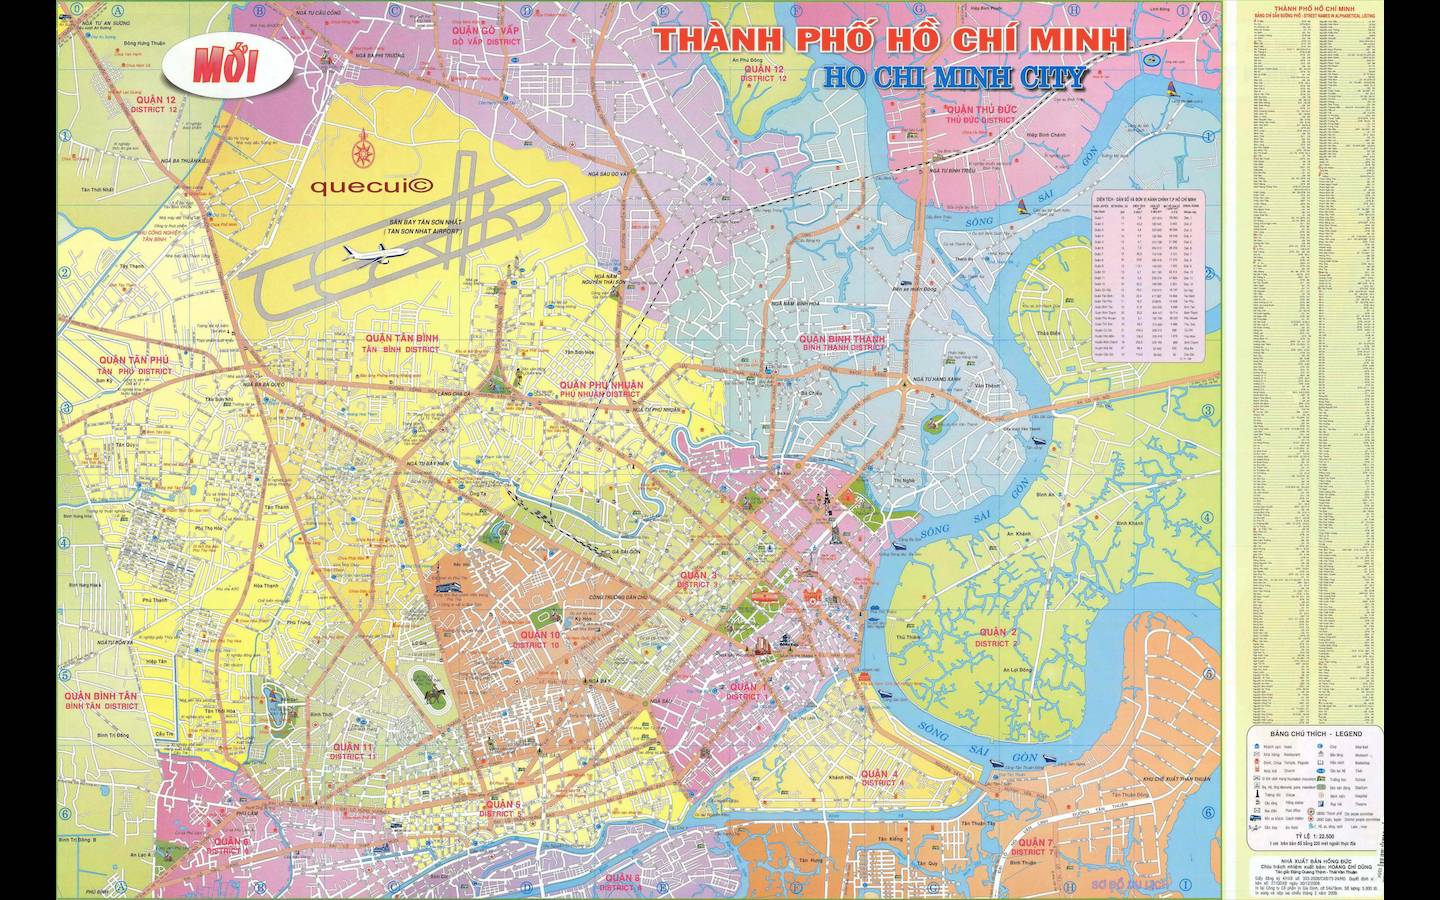 Quý khách muốn di chuyển thuận lợi trong thành phố Hồ Chí Minh? Hãy đến với bản đồ đường đi mới nhất của chúng tôi! Với những cập nhật thường xuyên và chính xác, bạn sẽ có thể lựa chọn các tuyến đường phù hợp nhất để tránh kẹt xe, tiết kiệm thời gian và năng lượng. Hãy xem ngay hình ảnh liên quan đến bản đồ đường đi thành phố Hồ Chí Minh!